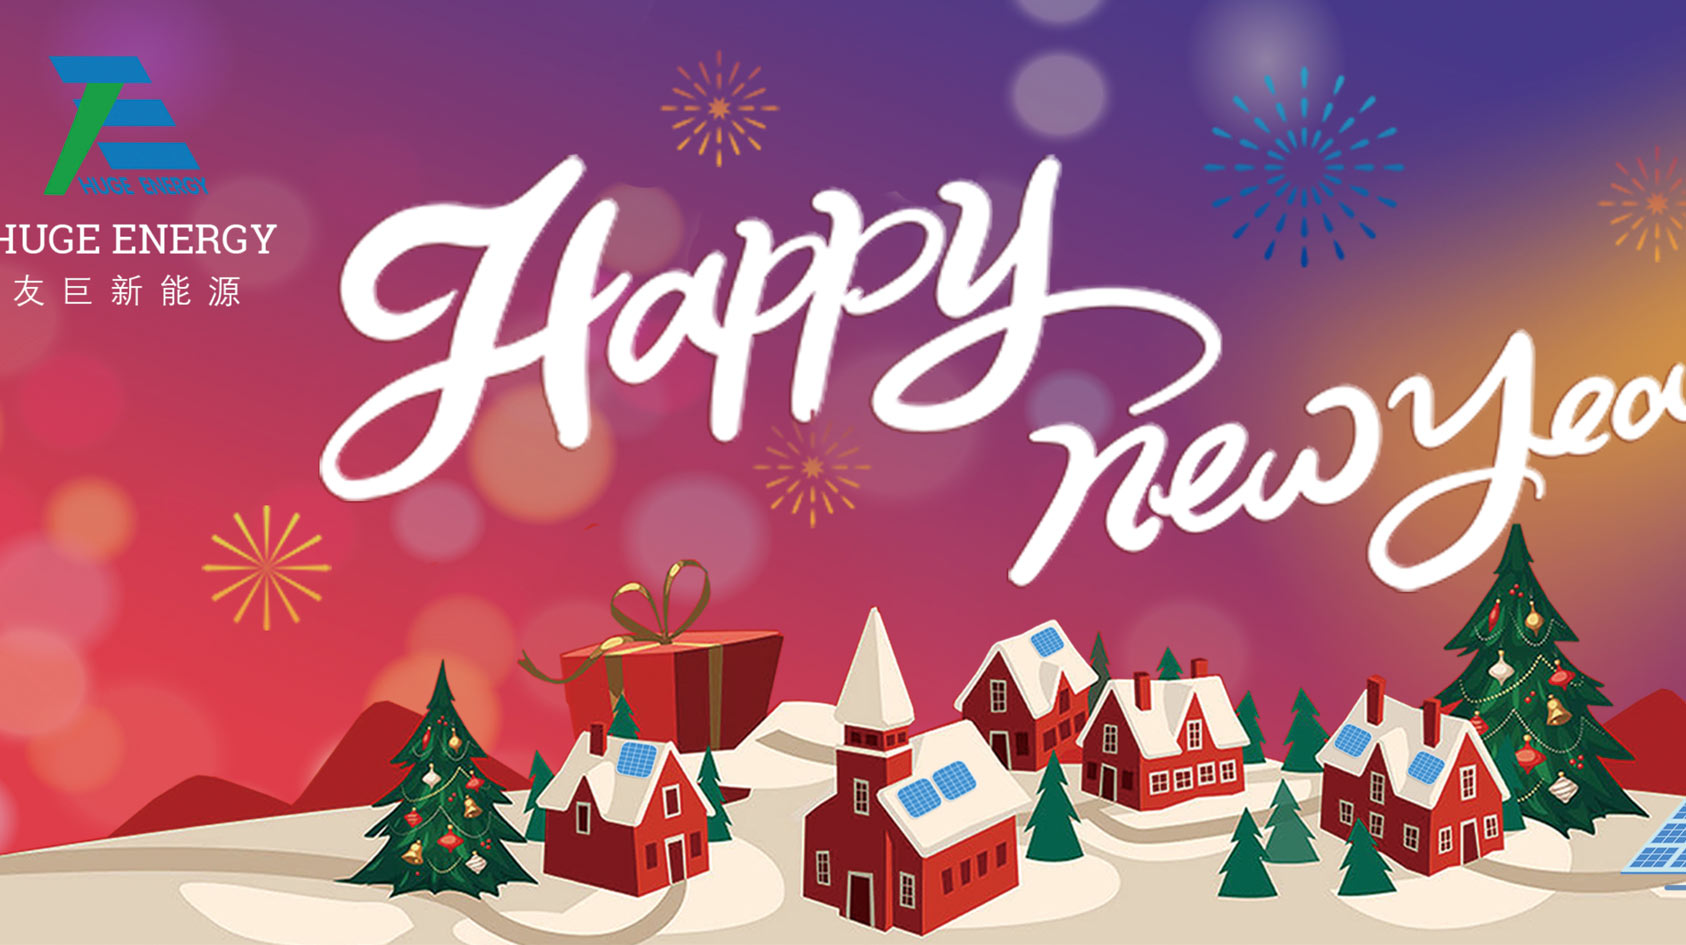 En ce début d'année, Huge Energy vous souhaite une bonne et heureuse année !